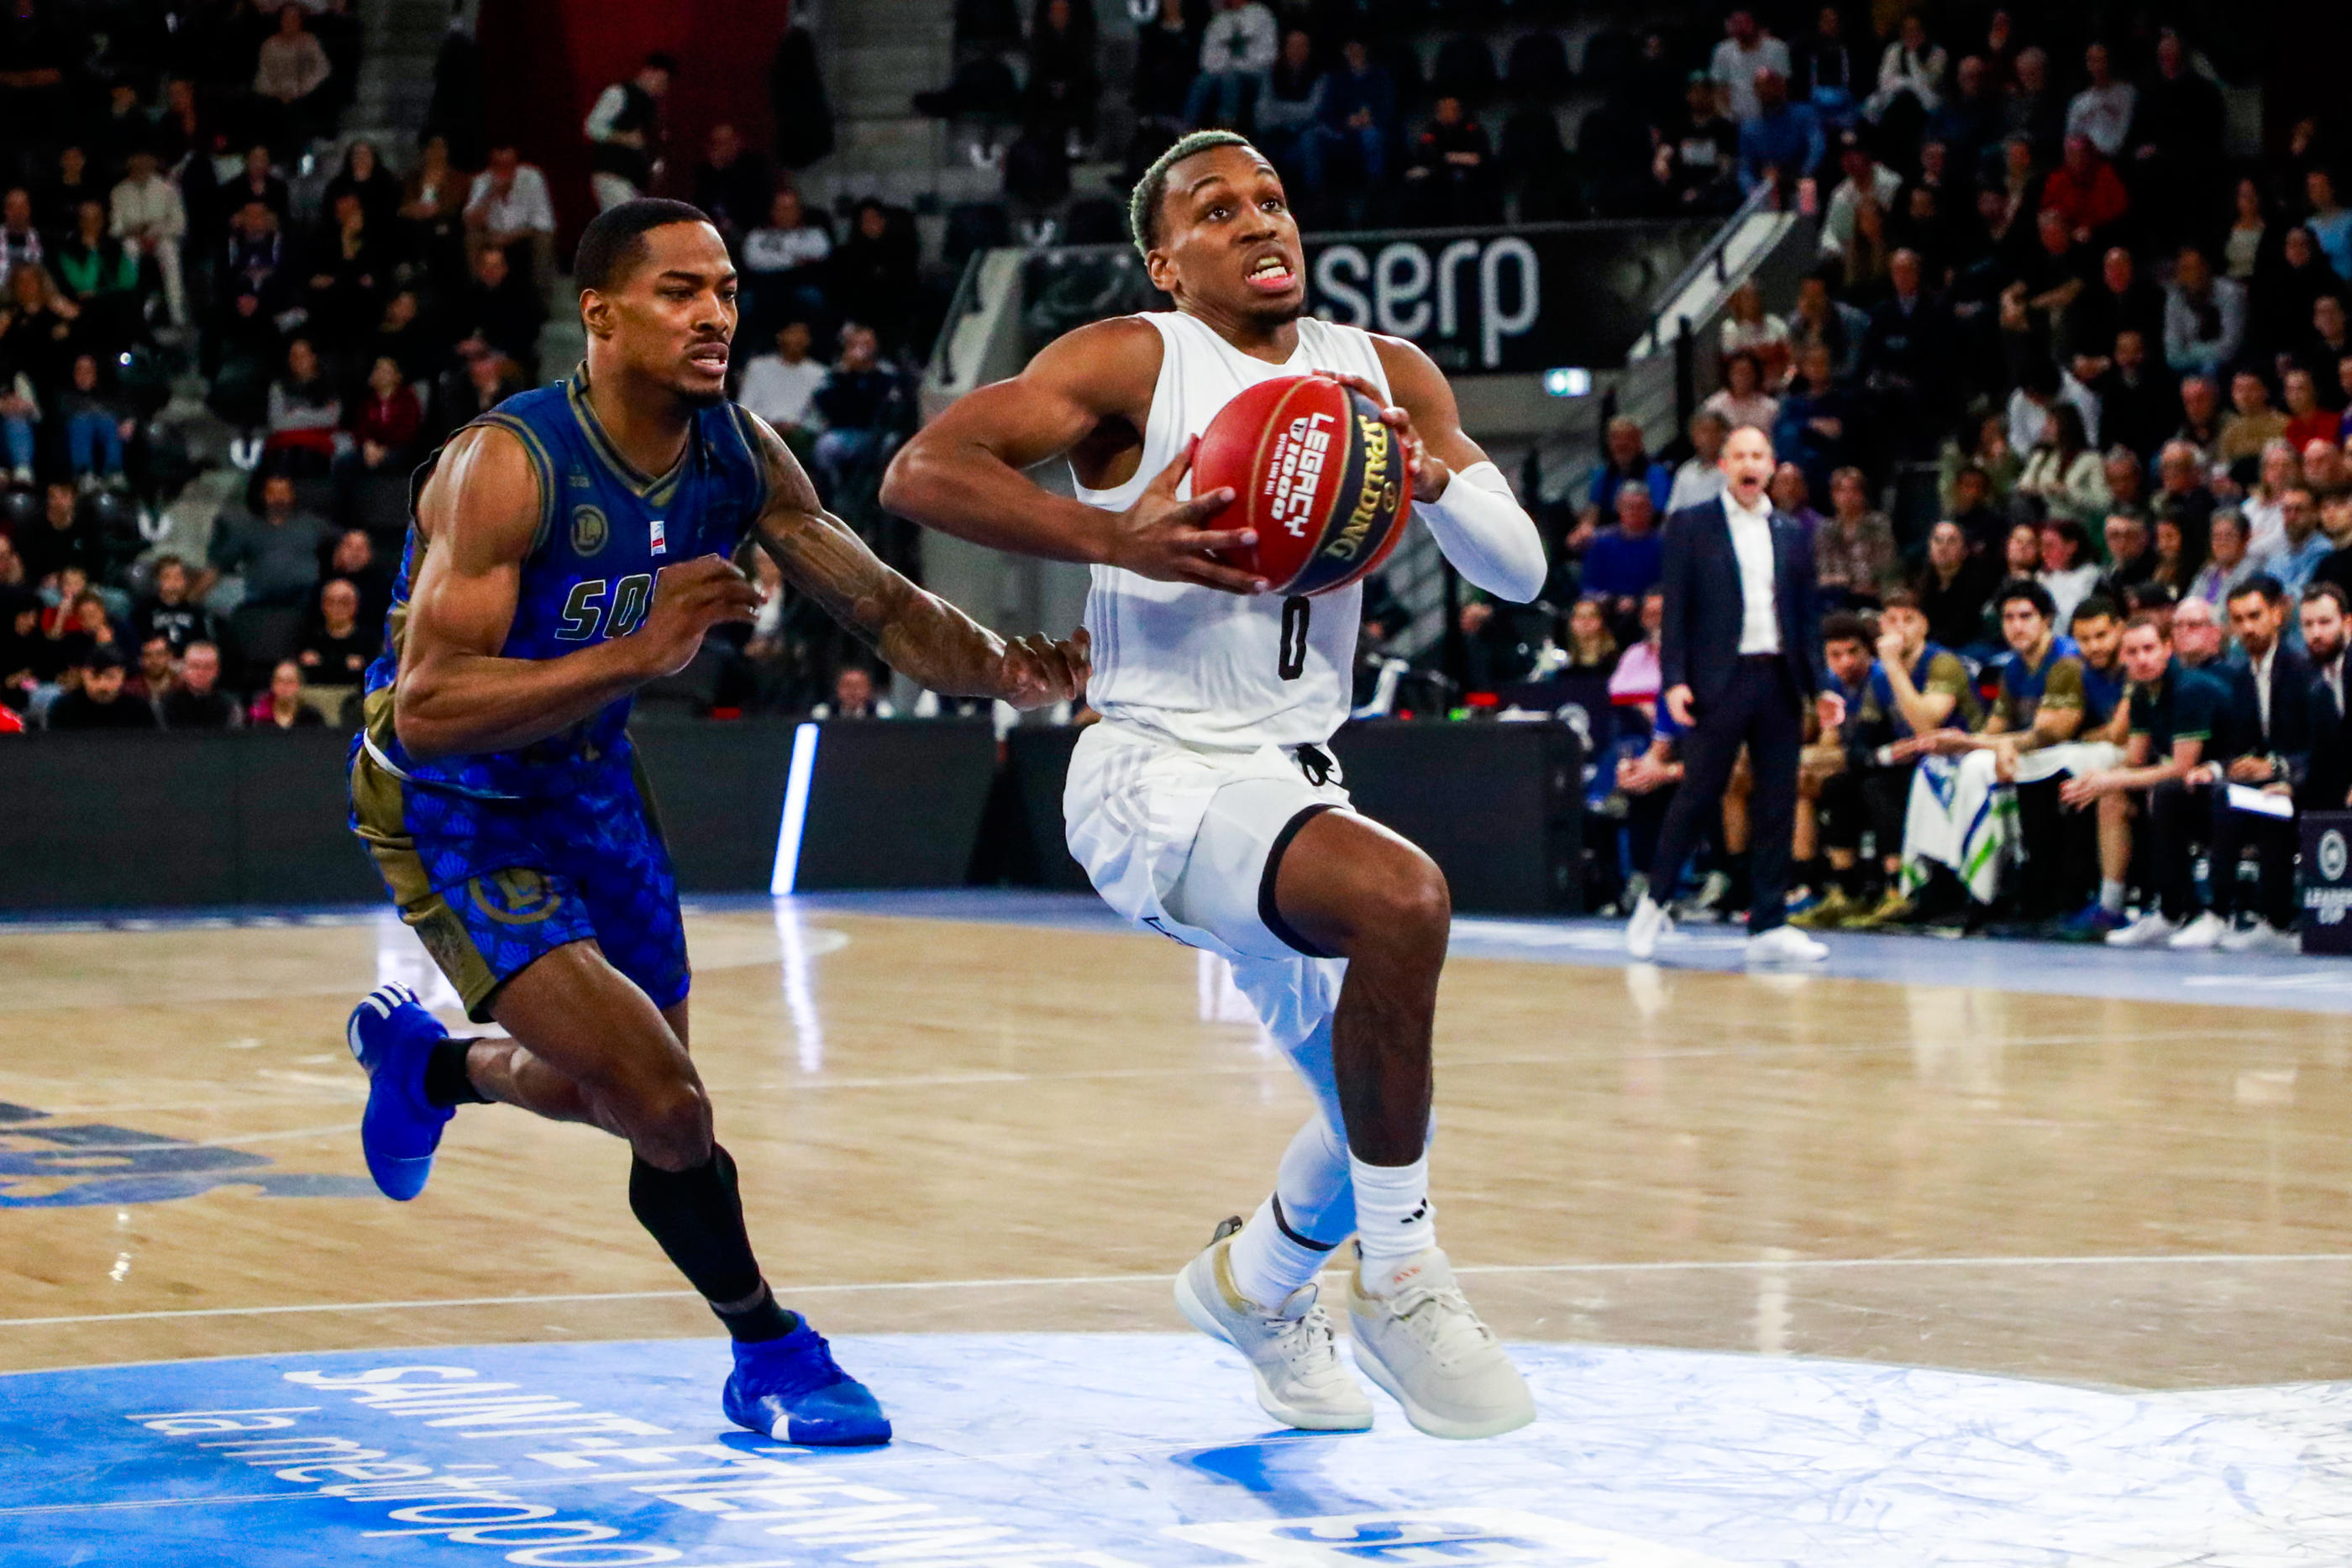 TJ Shorts, le meneur de jeu du Paris Basketball, est un des atouts majeurs qui peut faire basculer la finale de l'Eurocoupe. Icon Sport)